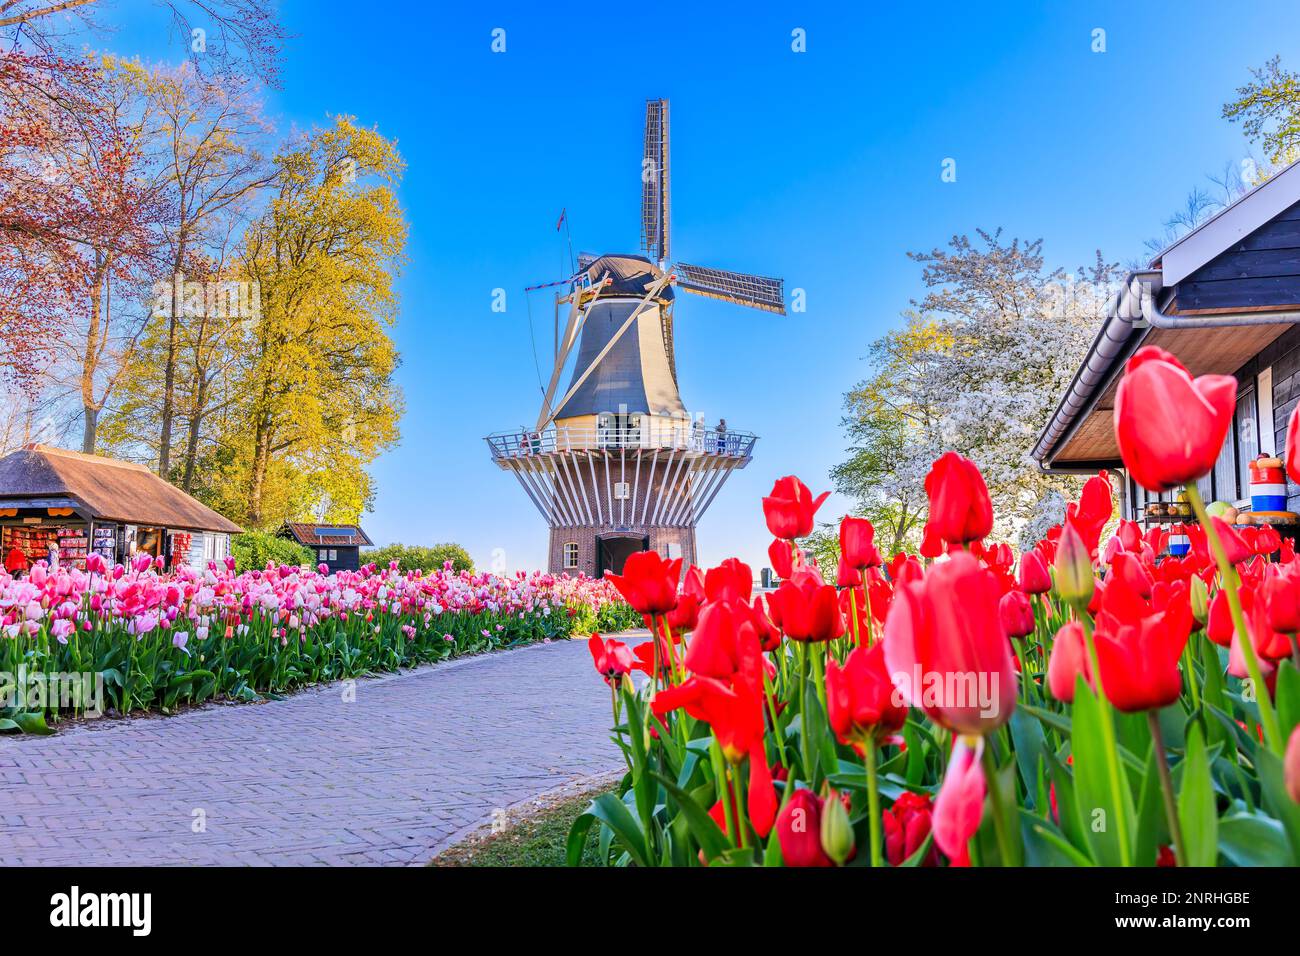 Fleurs de tulipes colorées parcouchés au jardin public de fleurs avec moulin à vent. Lisse, Hollande, pays-Bas. Banque D'Images